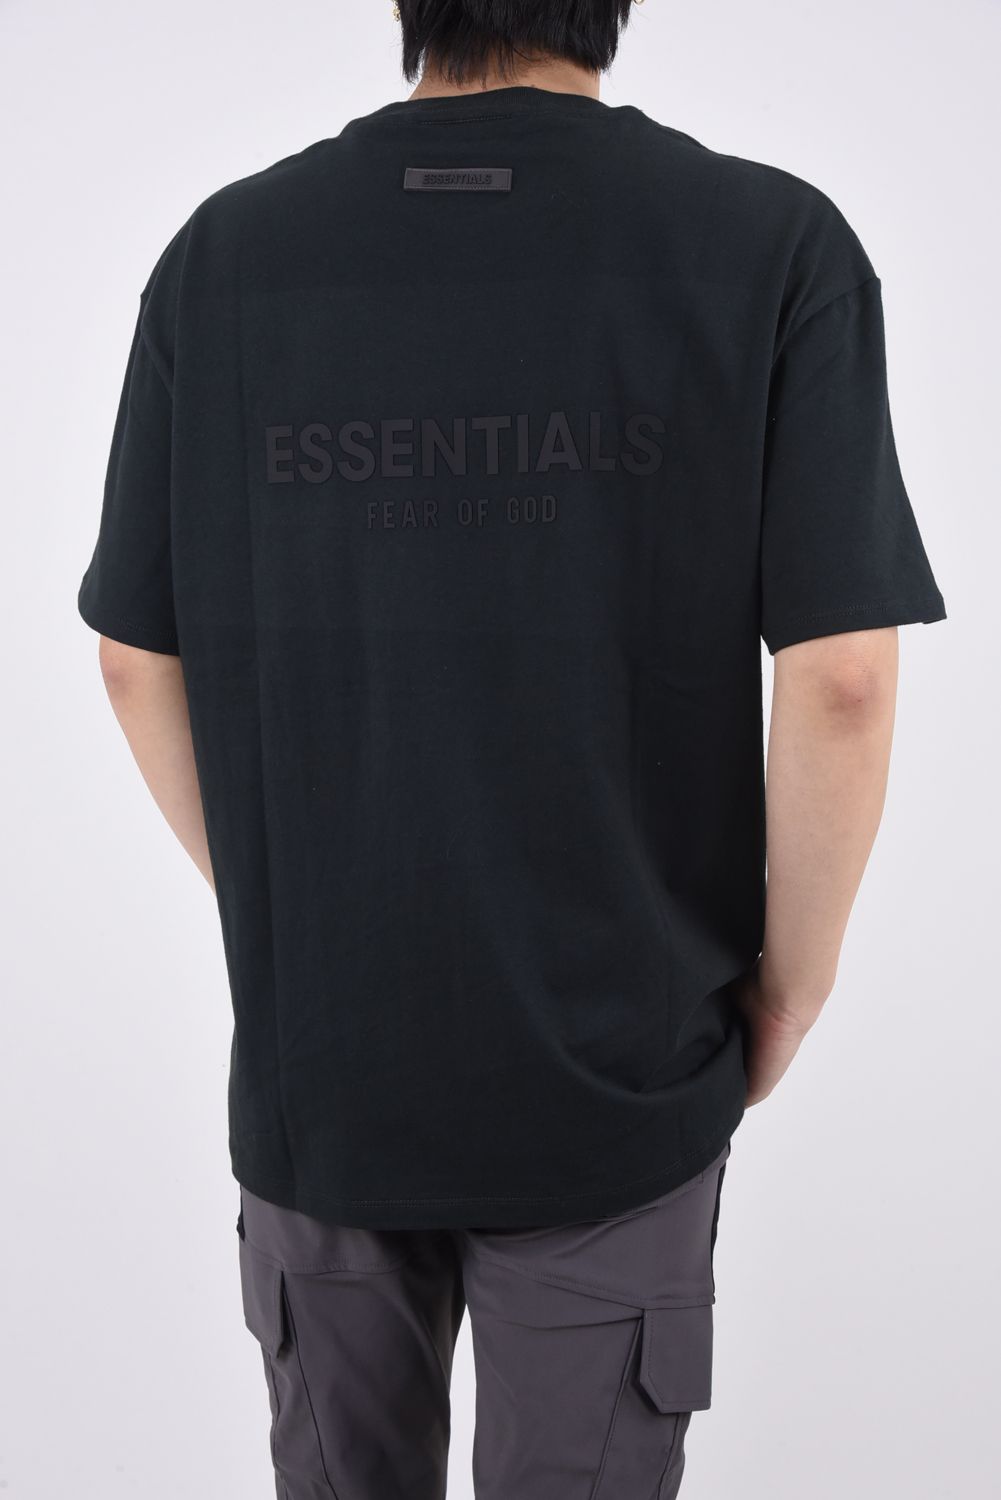 FOG essentials ブラックポロシャツ